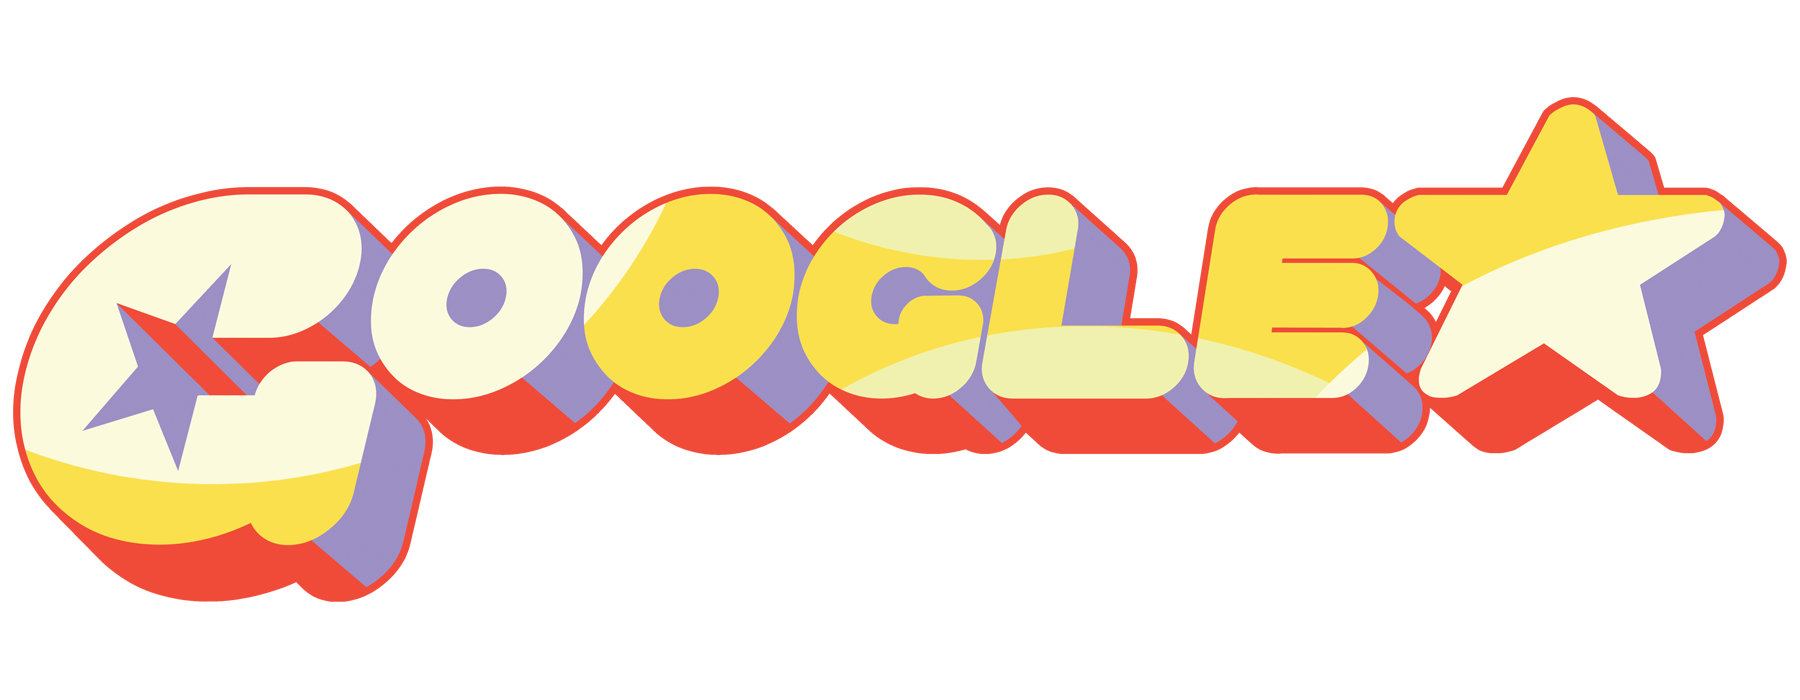 Cool Google Logo - Cool Google Designs Logo Png Image